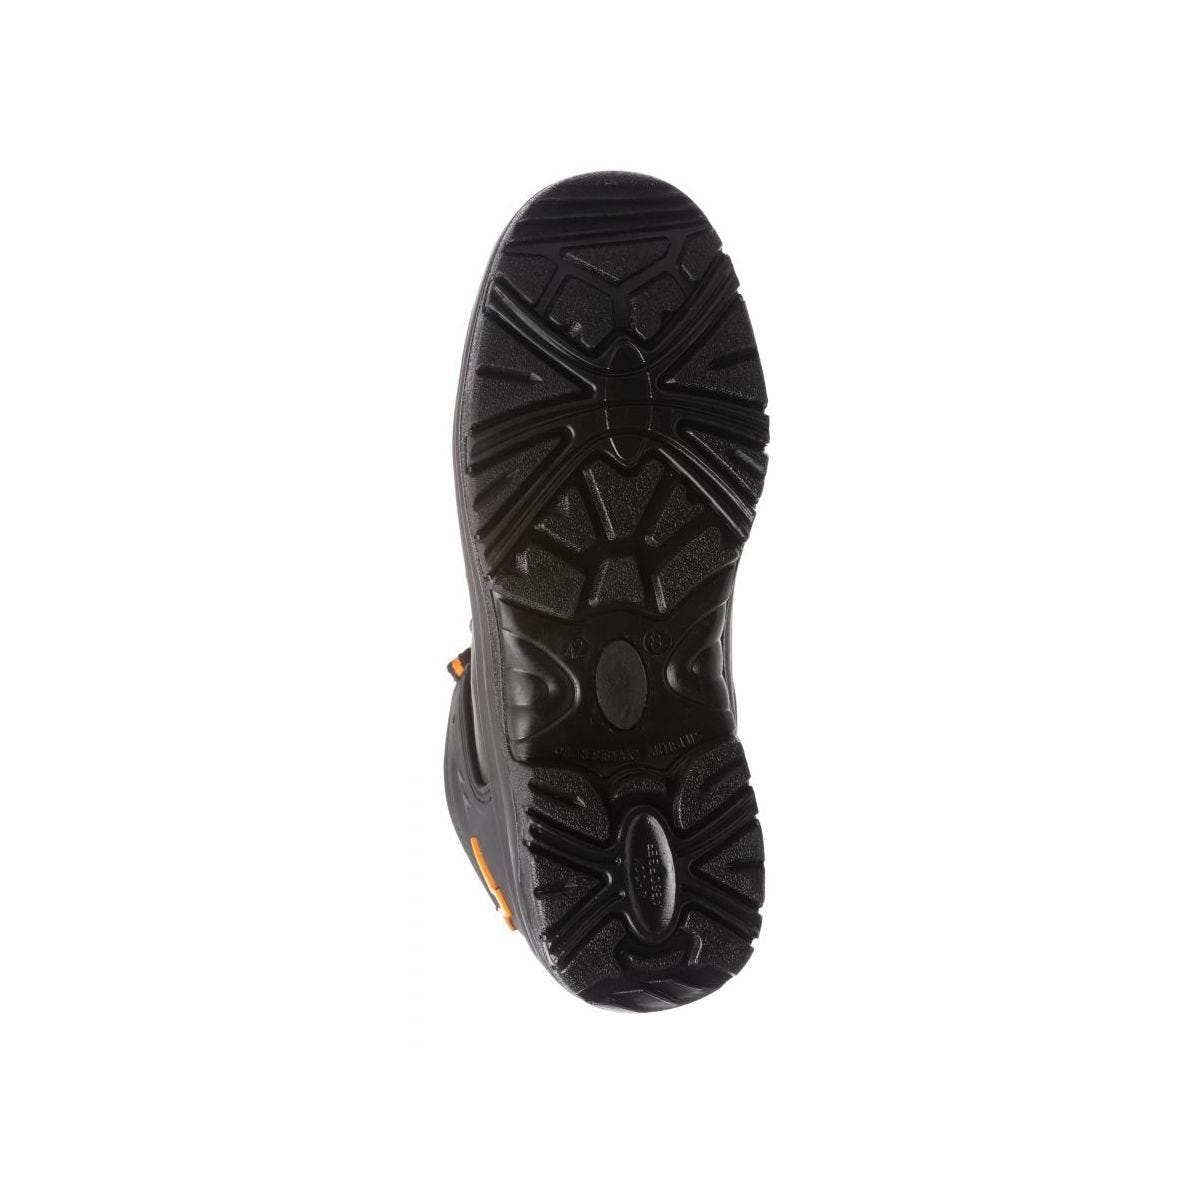 Chaussures de sécurité basses S3 SRC OPAL composite Noir - Coverguard - Taille 44 4